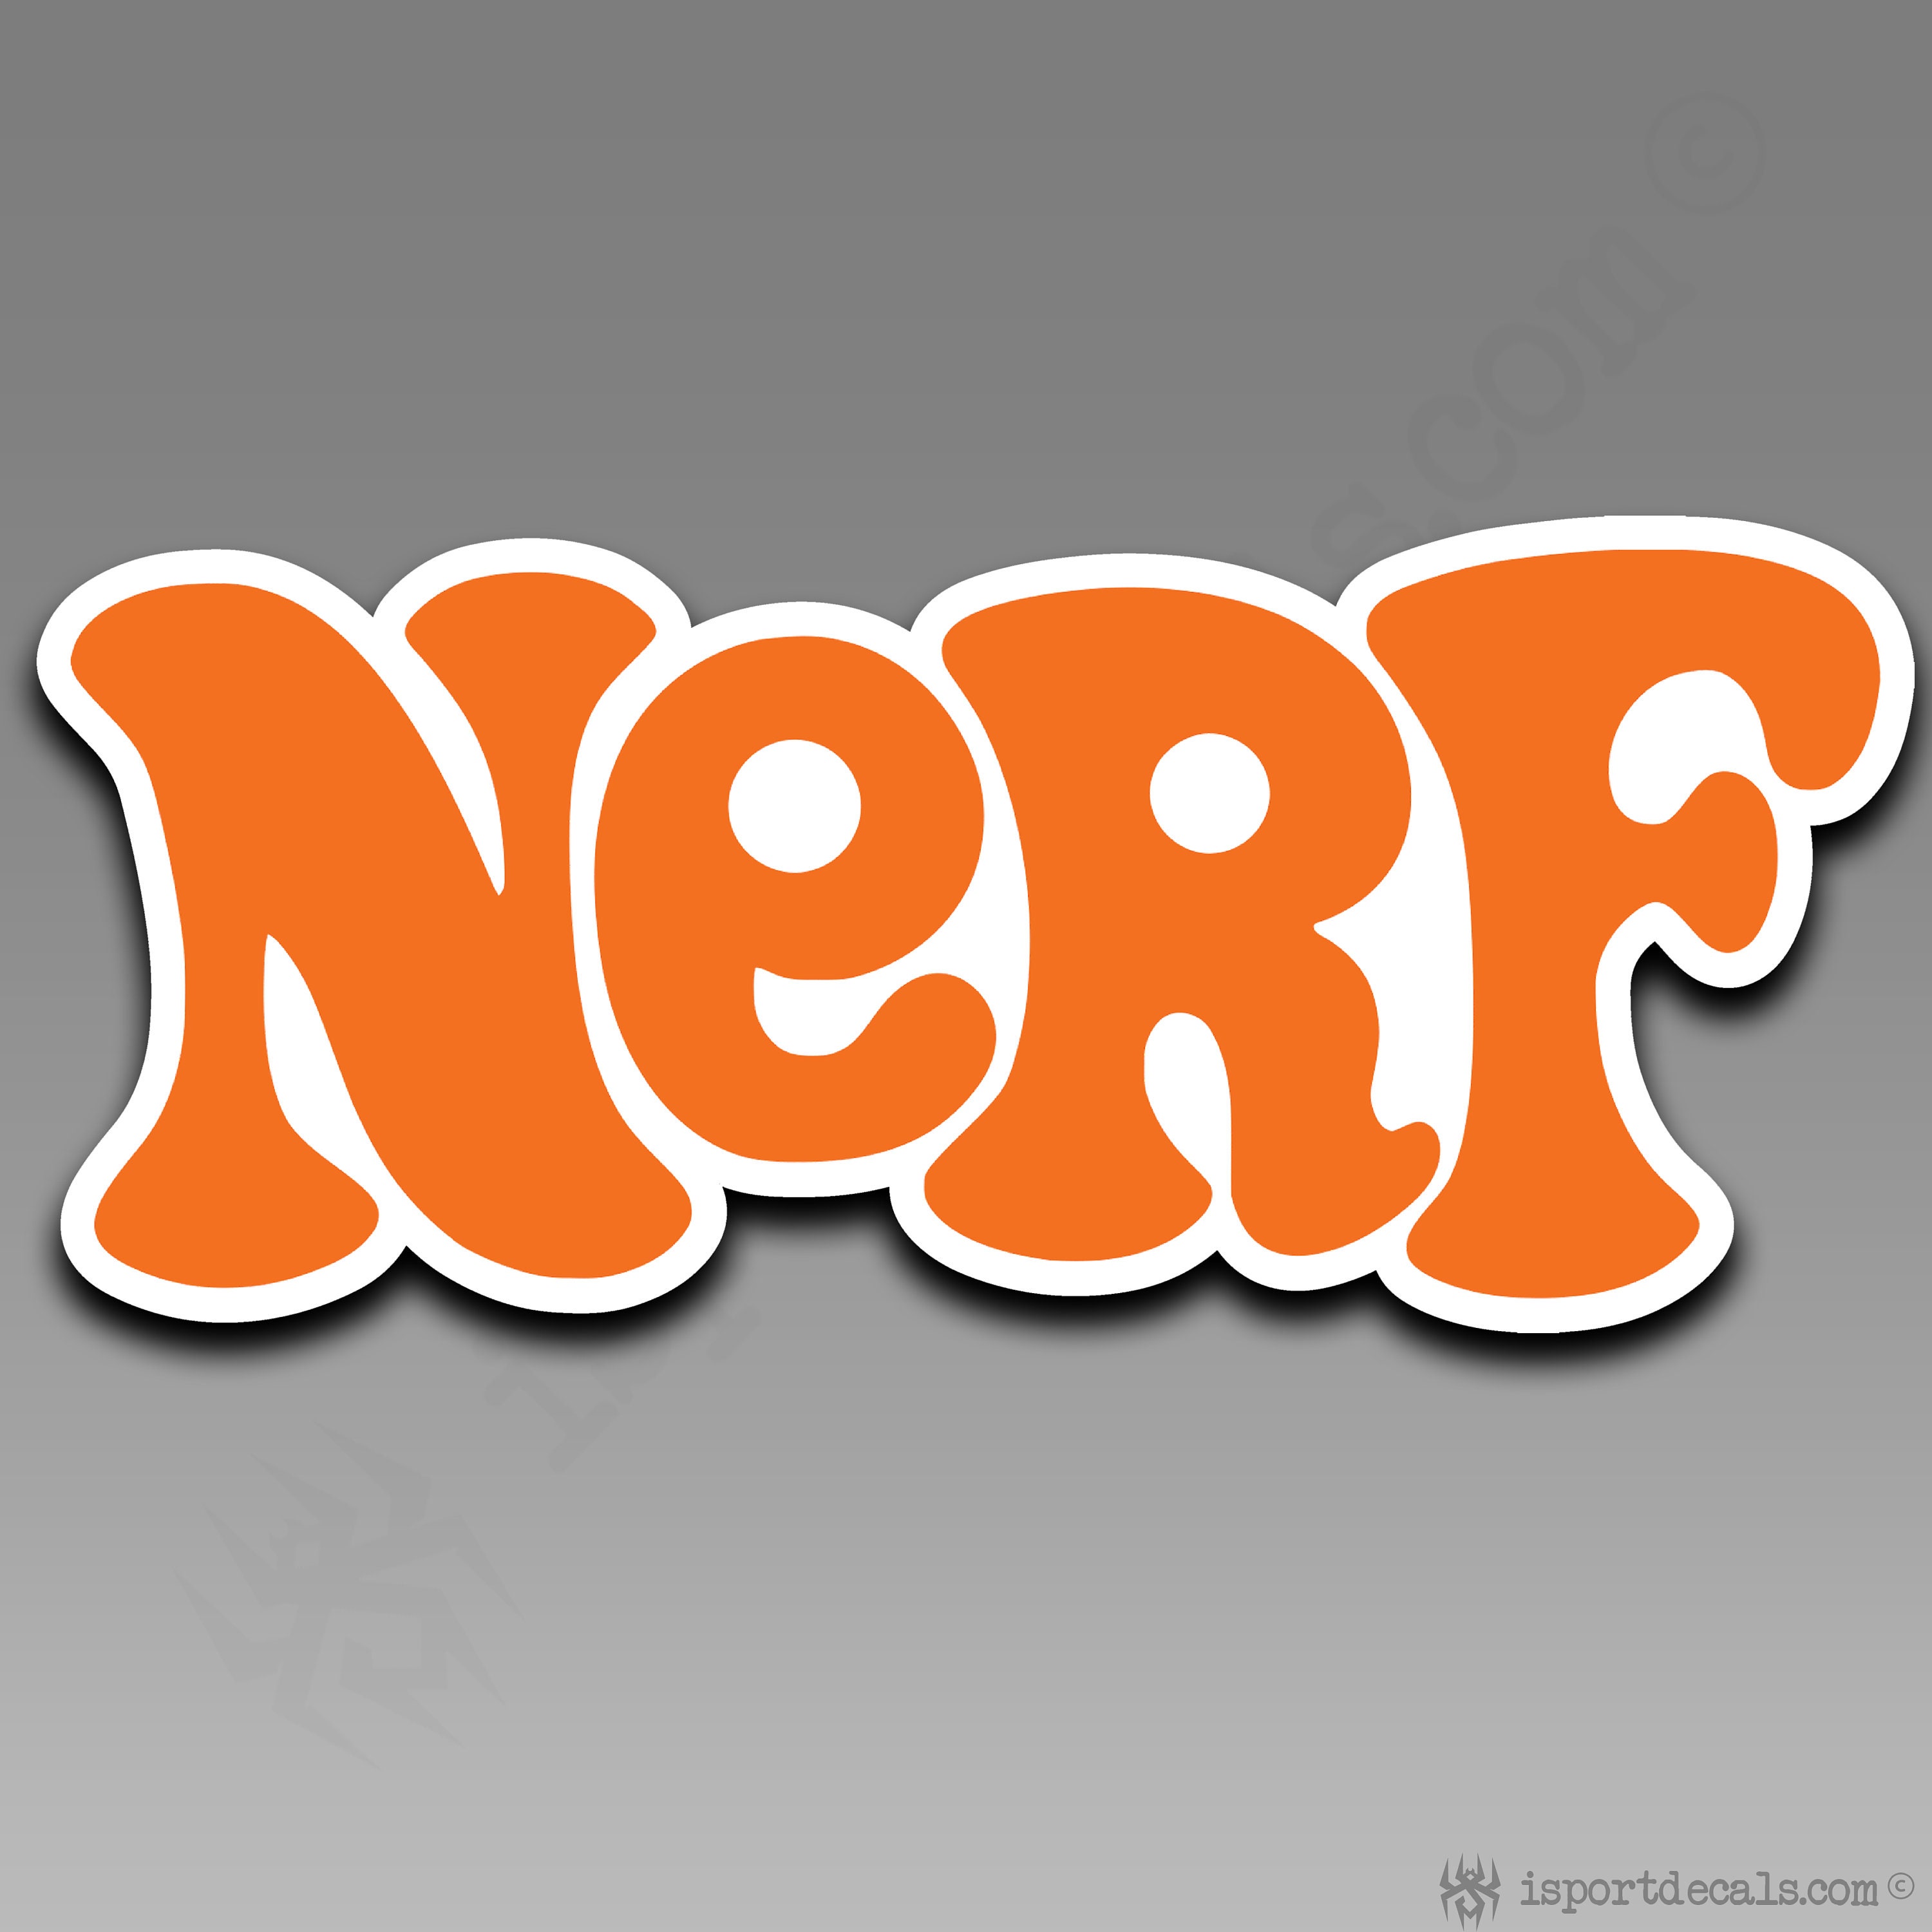 Nerf Logo 783-C056 Stencil